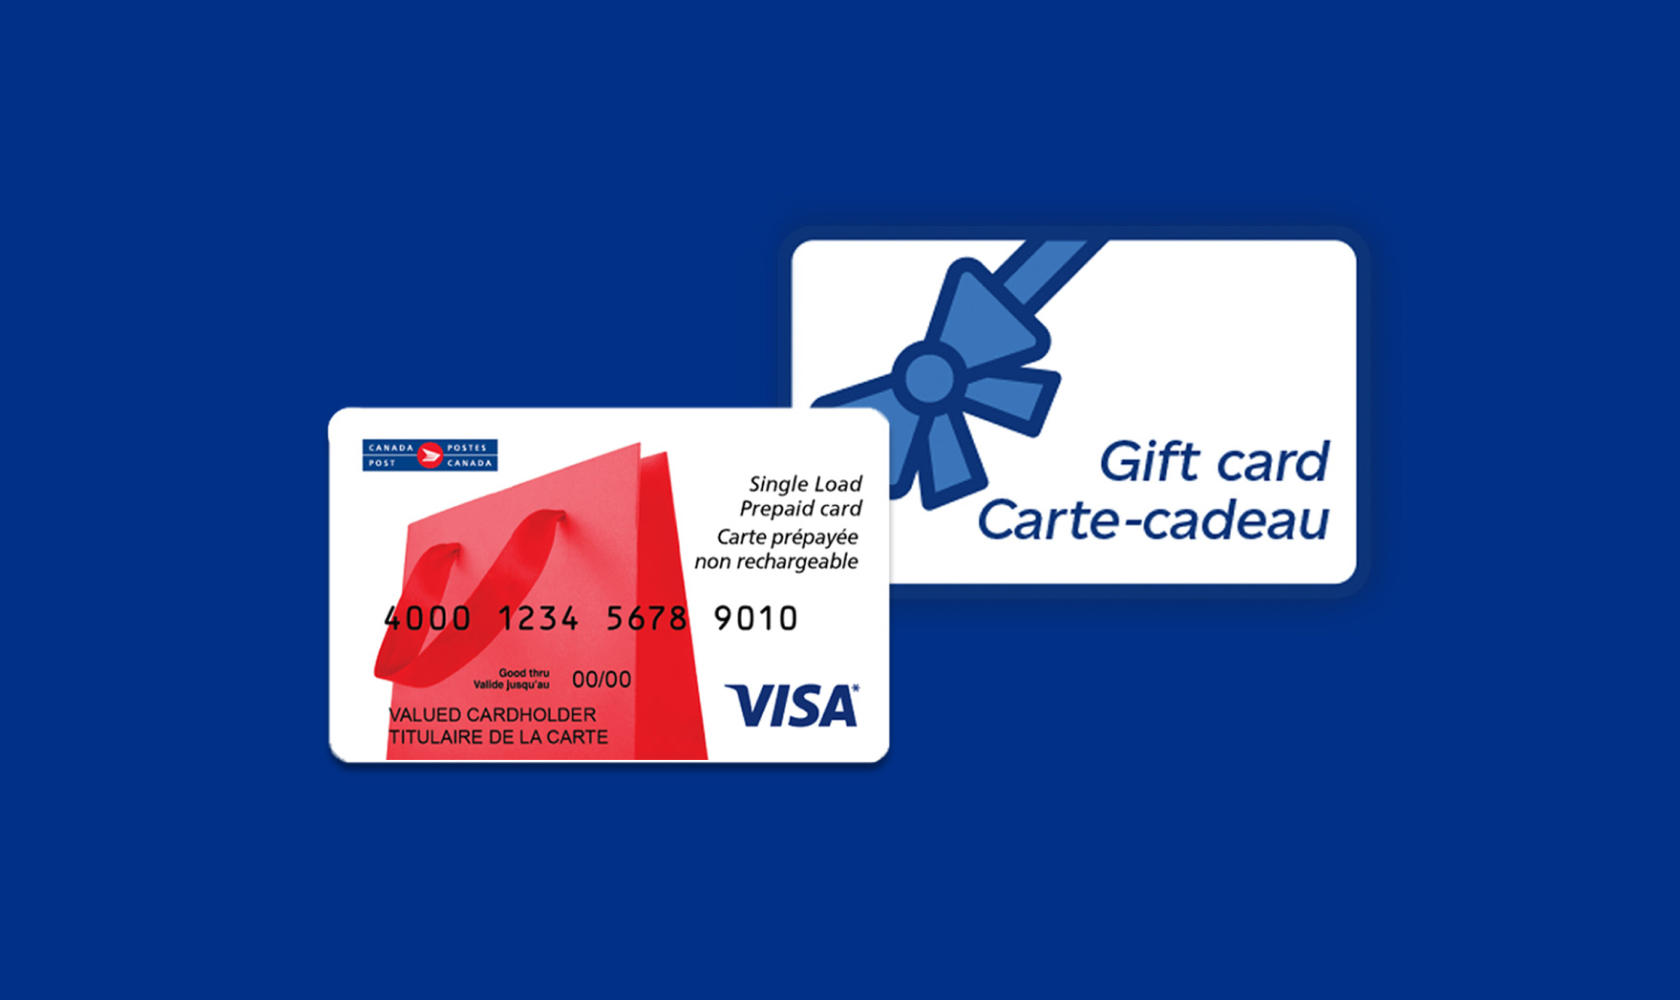 Une carte-cadeau avec une illustration de nœud bleu et une carte Visa prépayée non rechargeable de Postes Canada